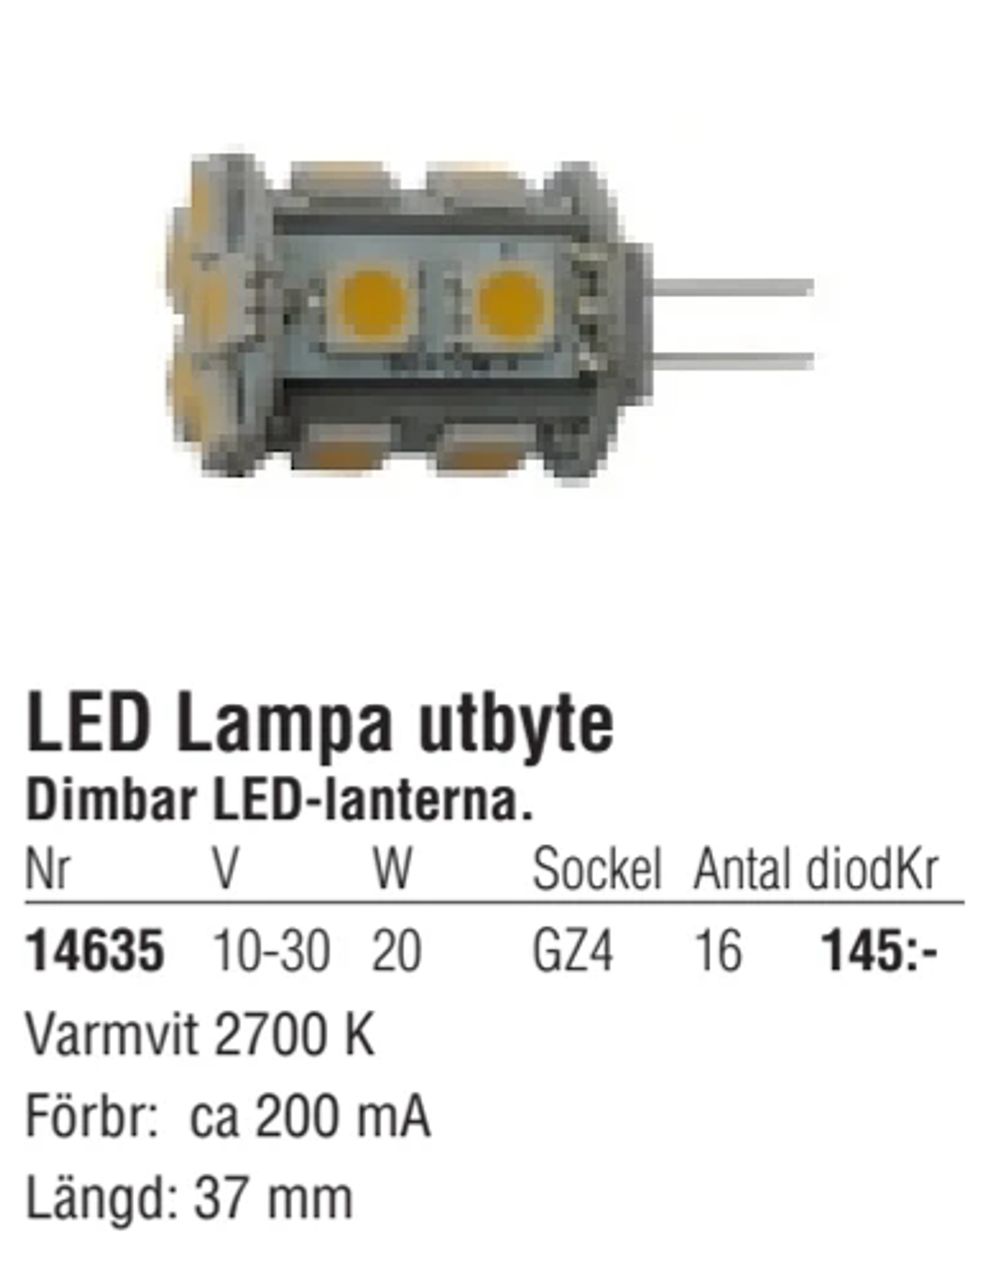 Erbjudanden på LED Lampa utbyte från Erlandsons Brygga för 145 kr